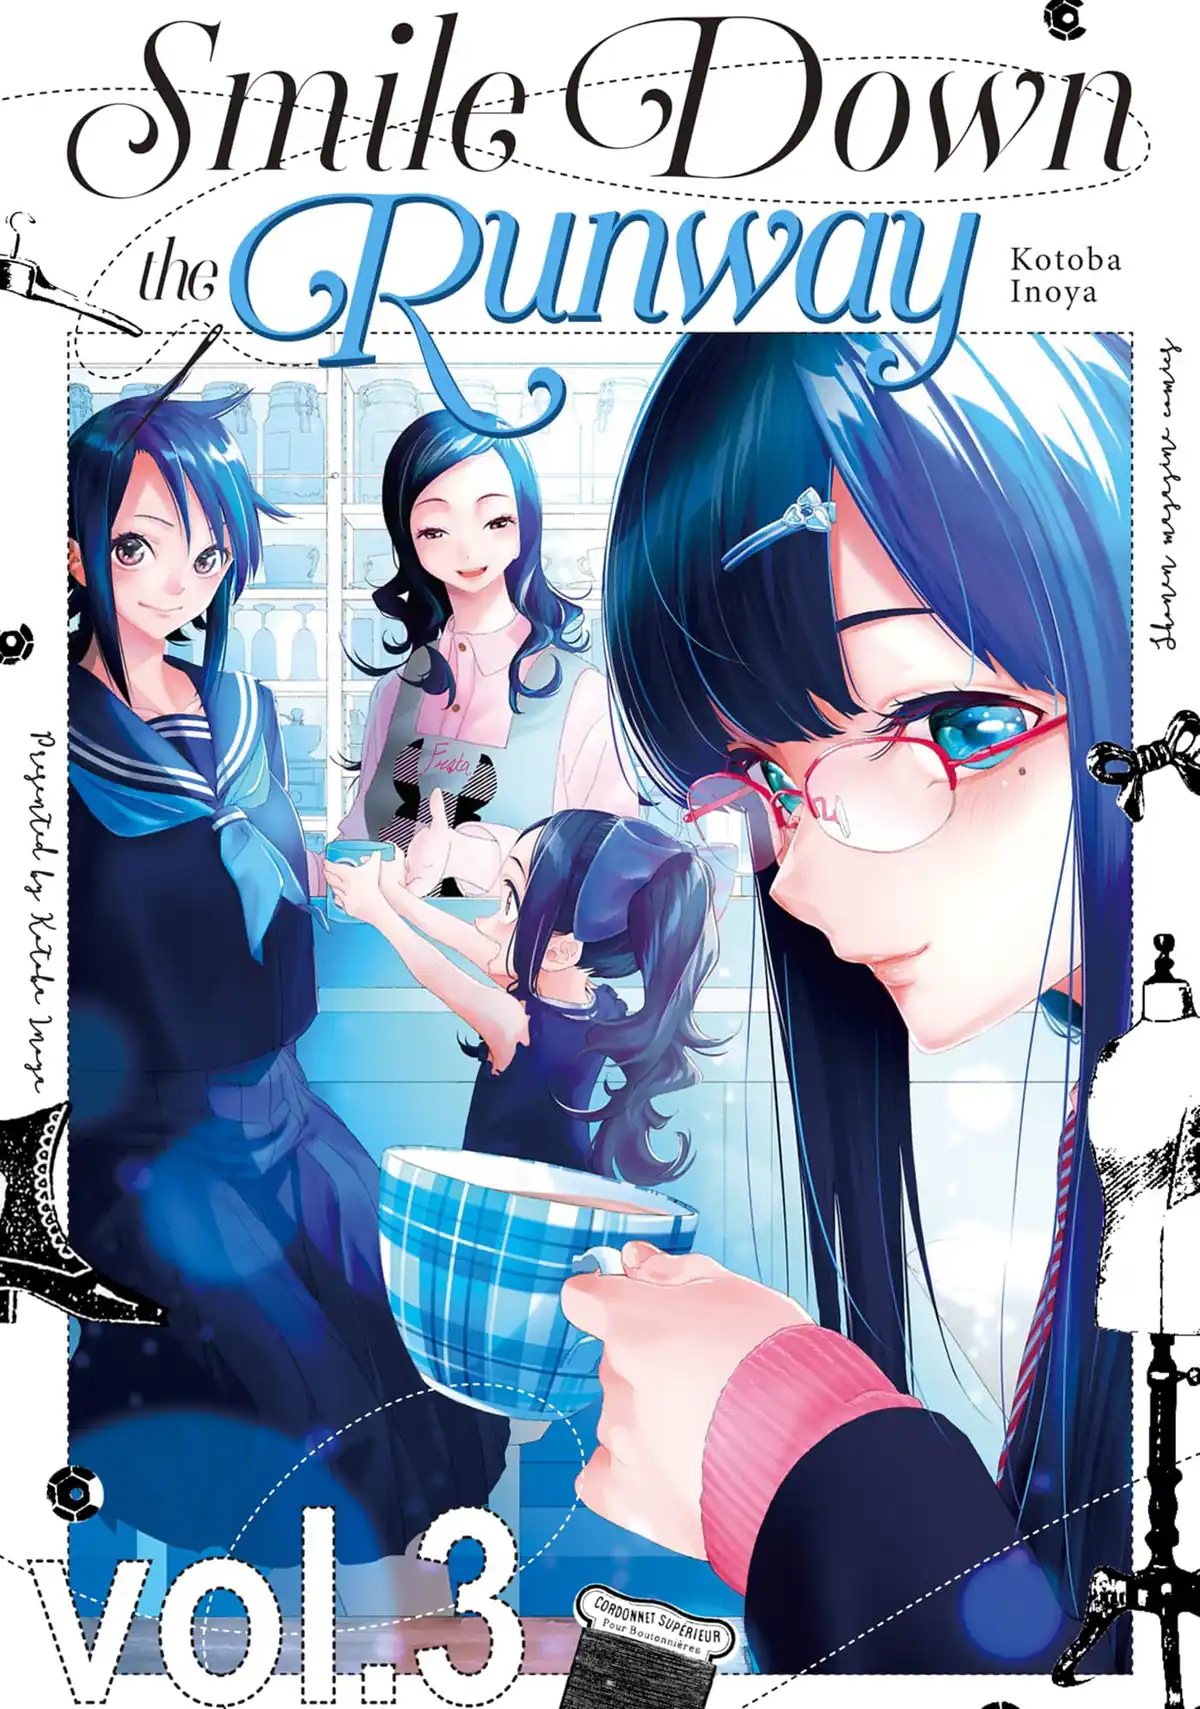 Runway de Waratte Manga - Chapter 151 - Manga Rock Team - Read Manga Online  For Free